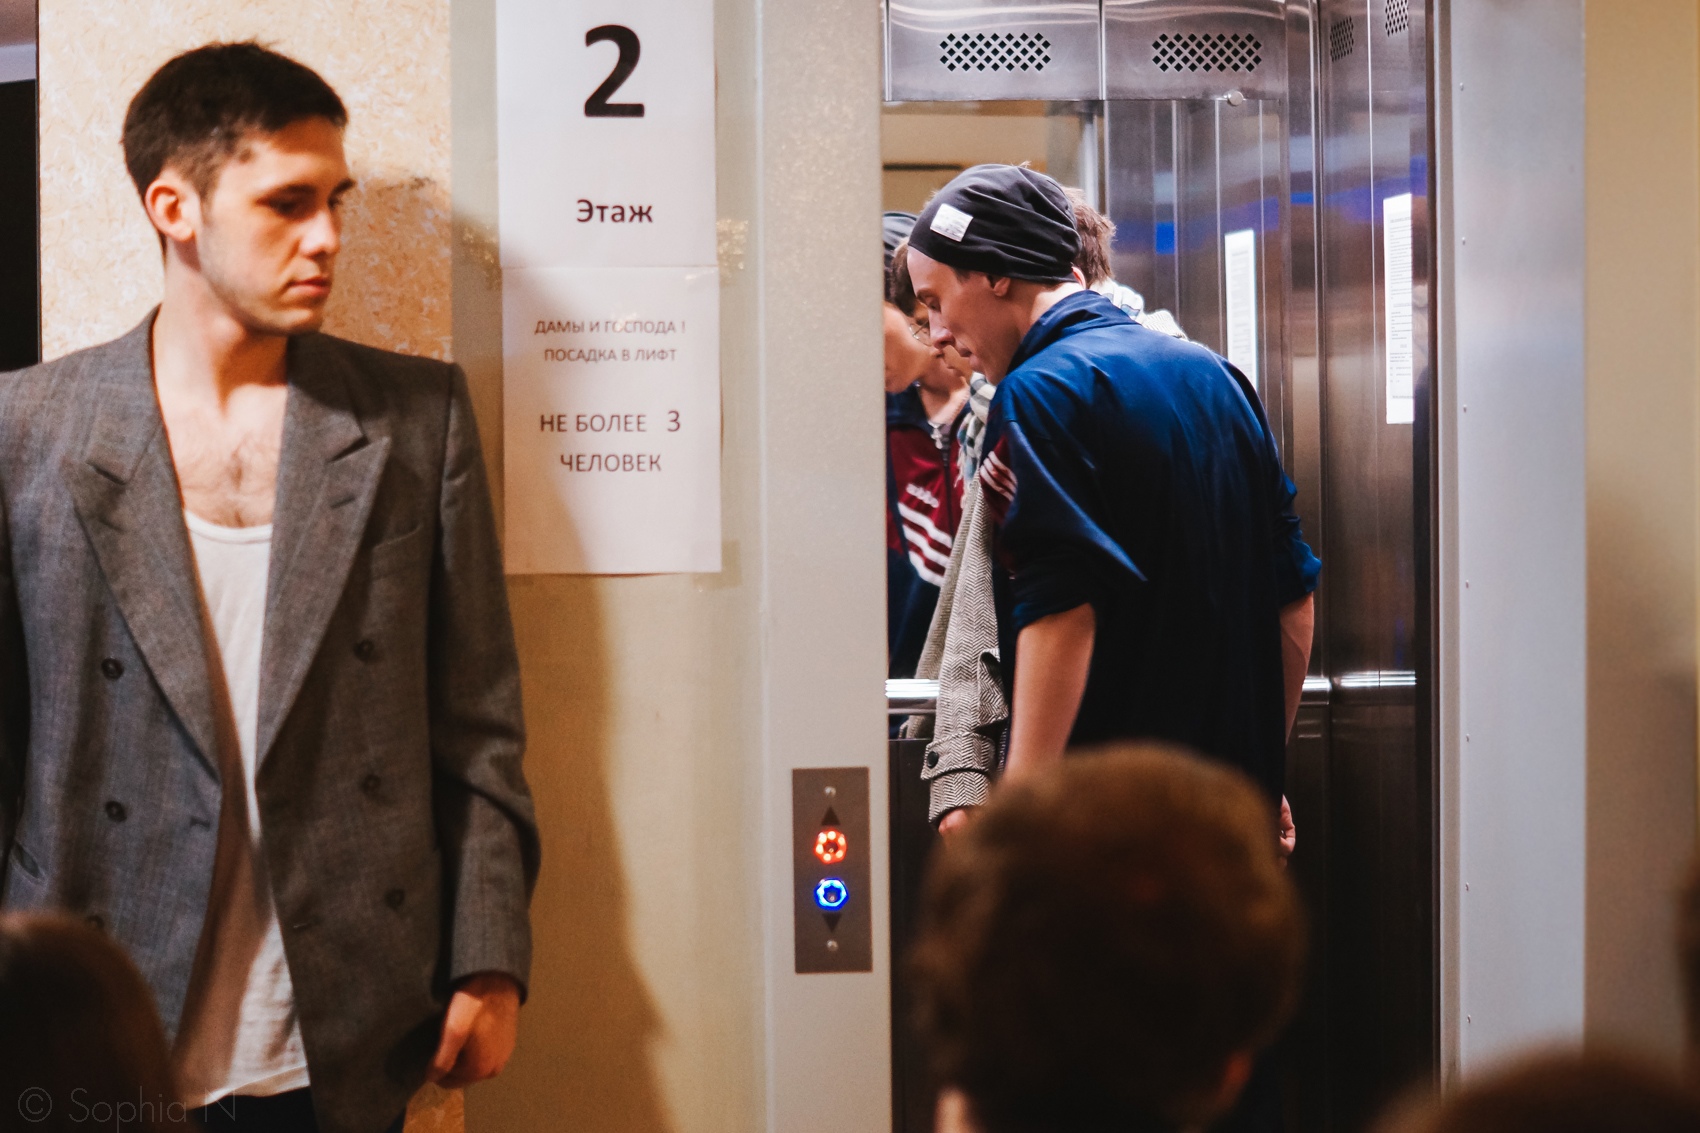 Спектакль лифт отзывы. Спектакль лифт Екатеринбург. Спектакль лифт. Двое в лифте спектакль.